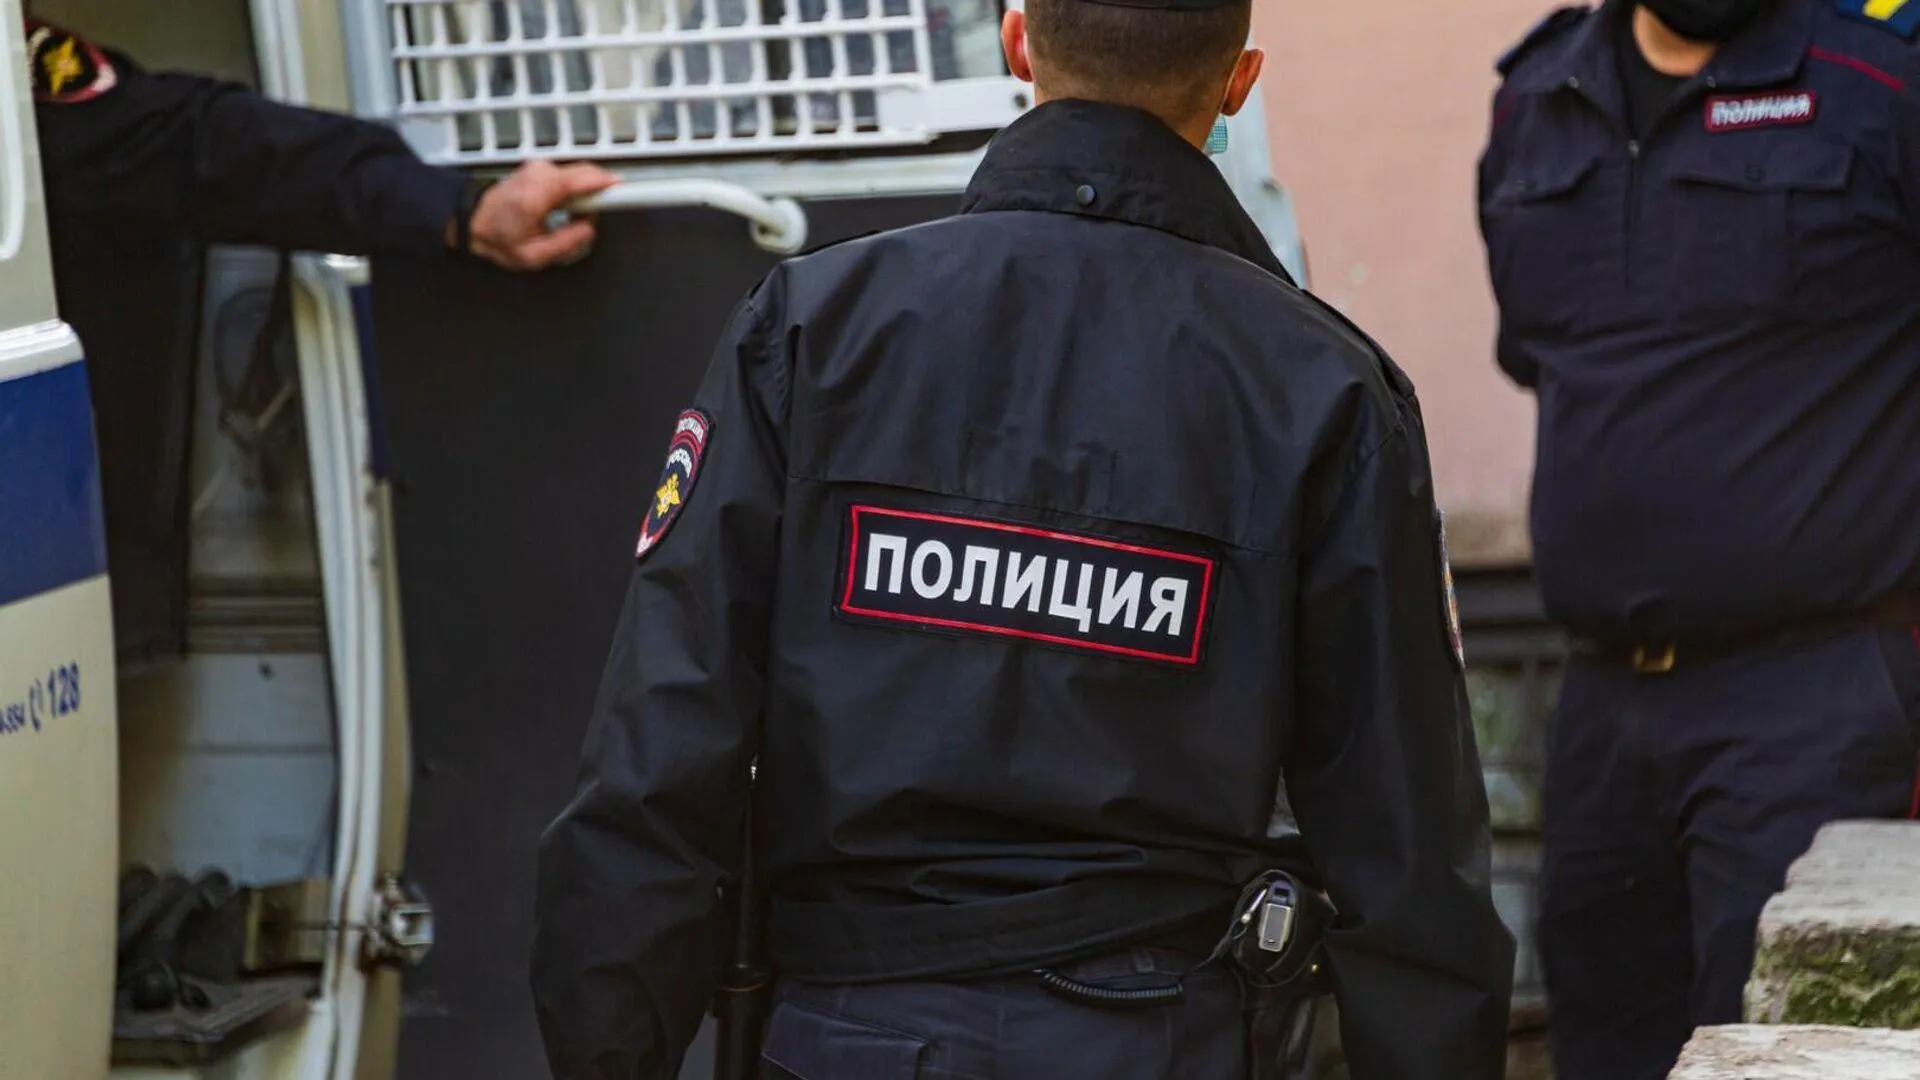 МВД проверит жалобу киргизского дипломата на московских полицейских